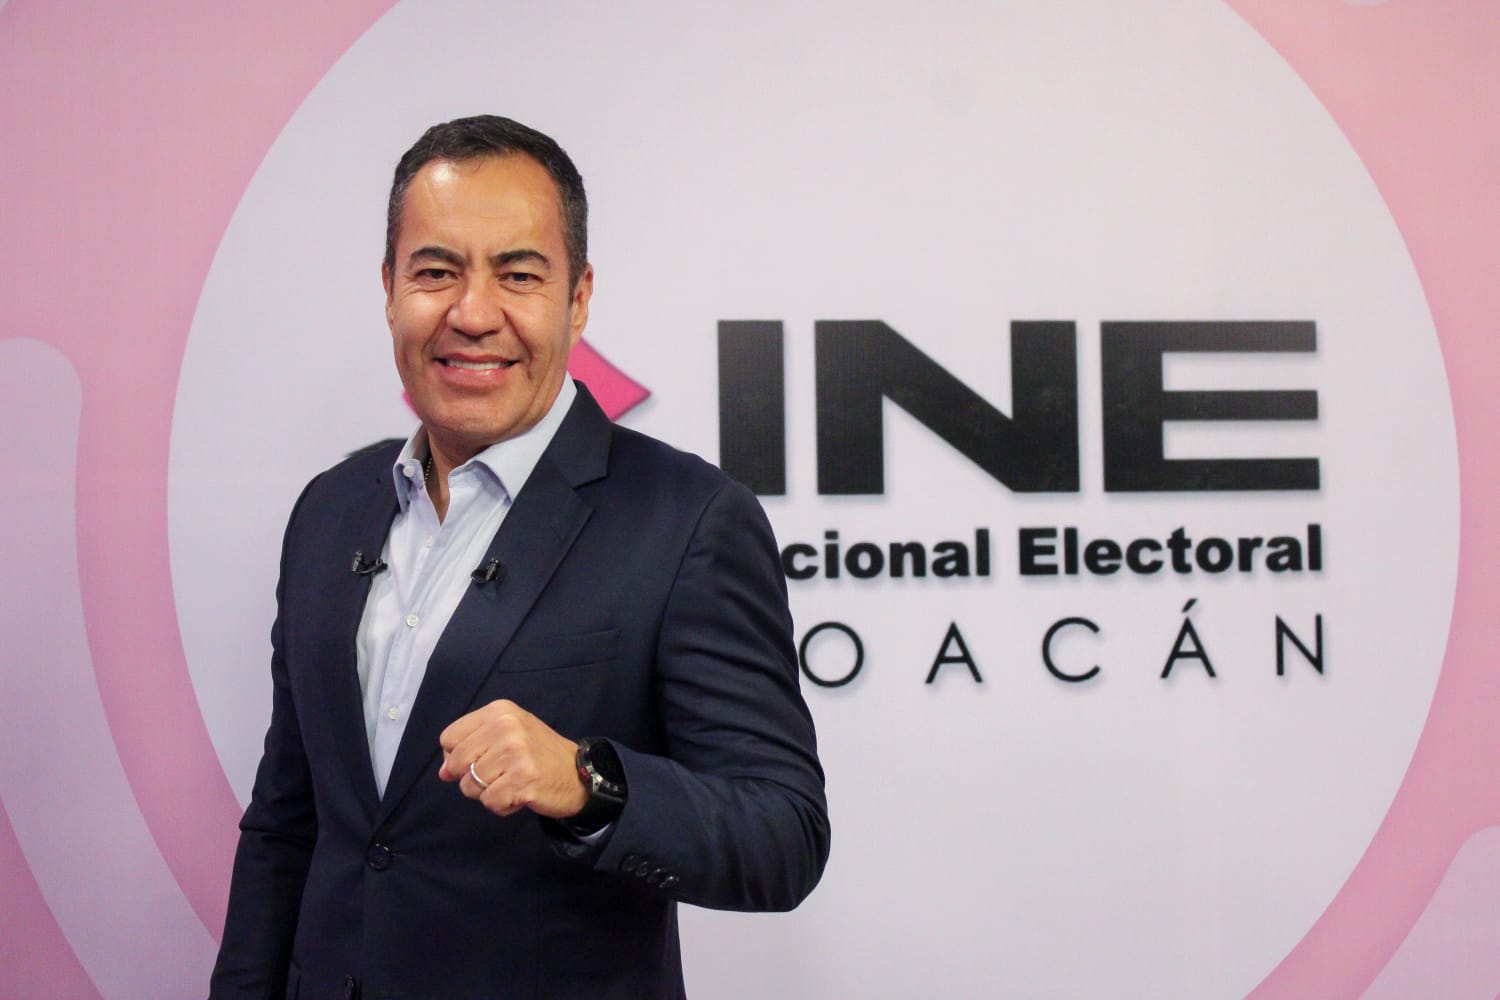 Destaca Carlos Herrera en primer debate rumbo al Senado con el mejor desempeño